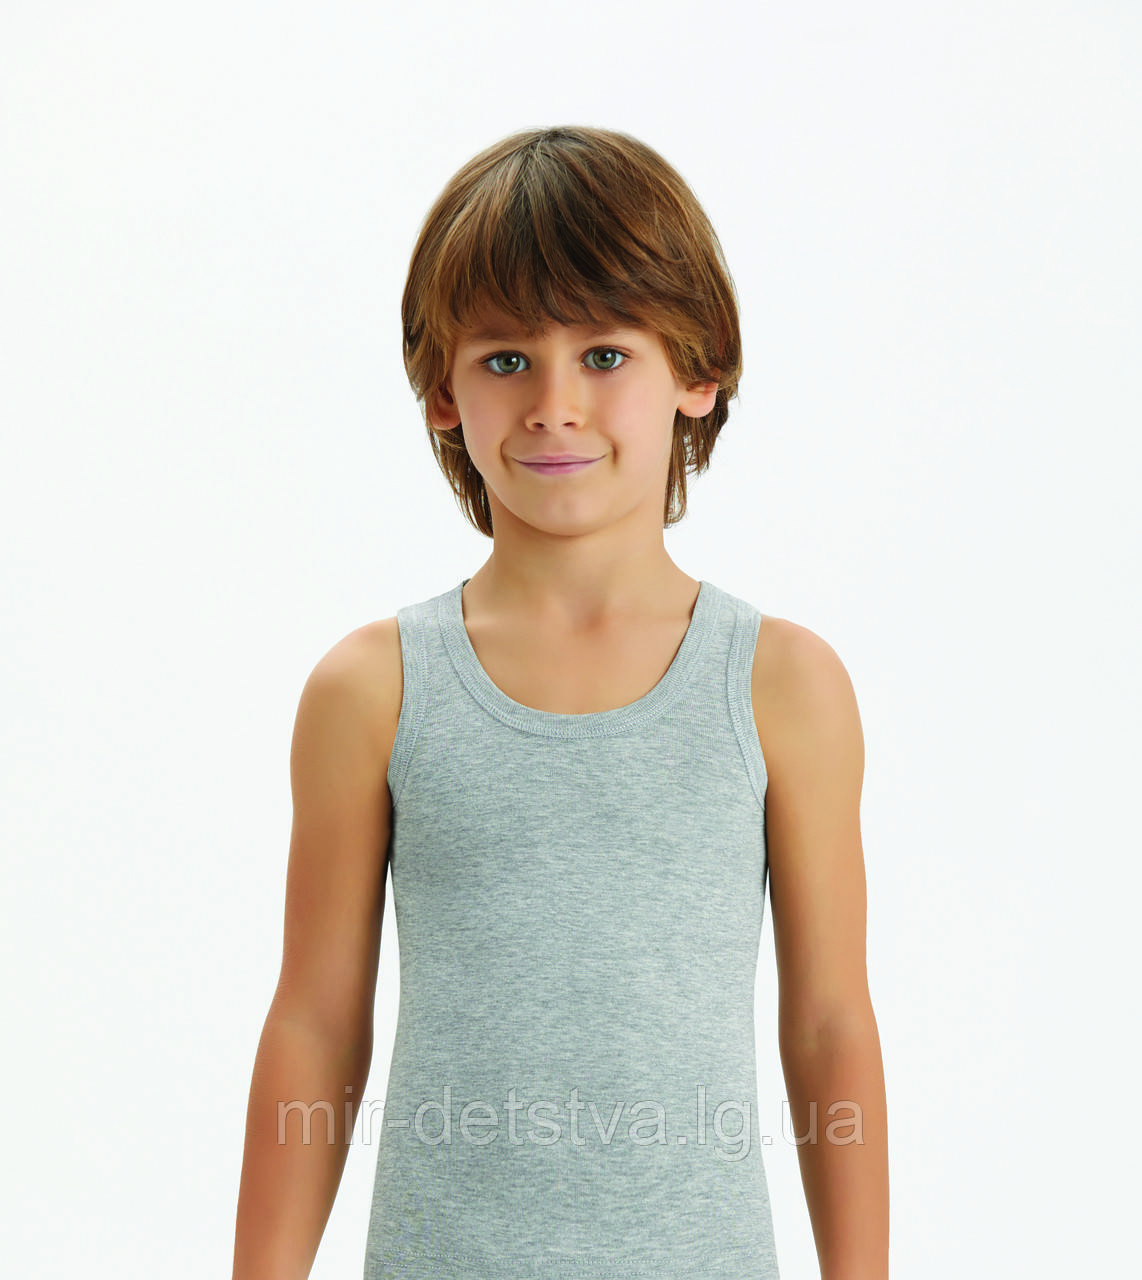 Дитяча білизна для хлопчиків з Туреччини оптом. Сіра майка для хлопчика ТМ Baykar р. 5 (146-152 см)